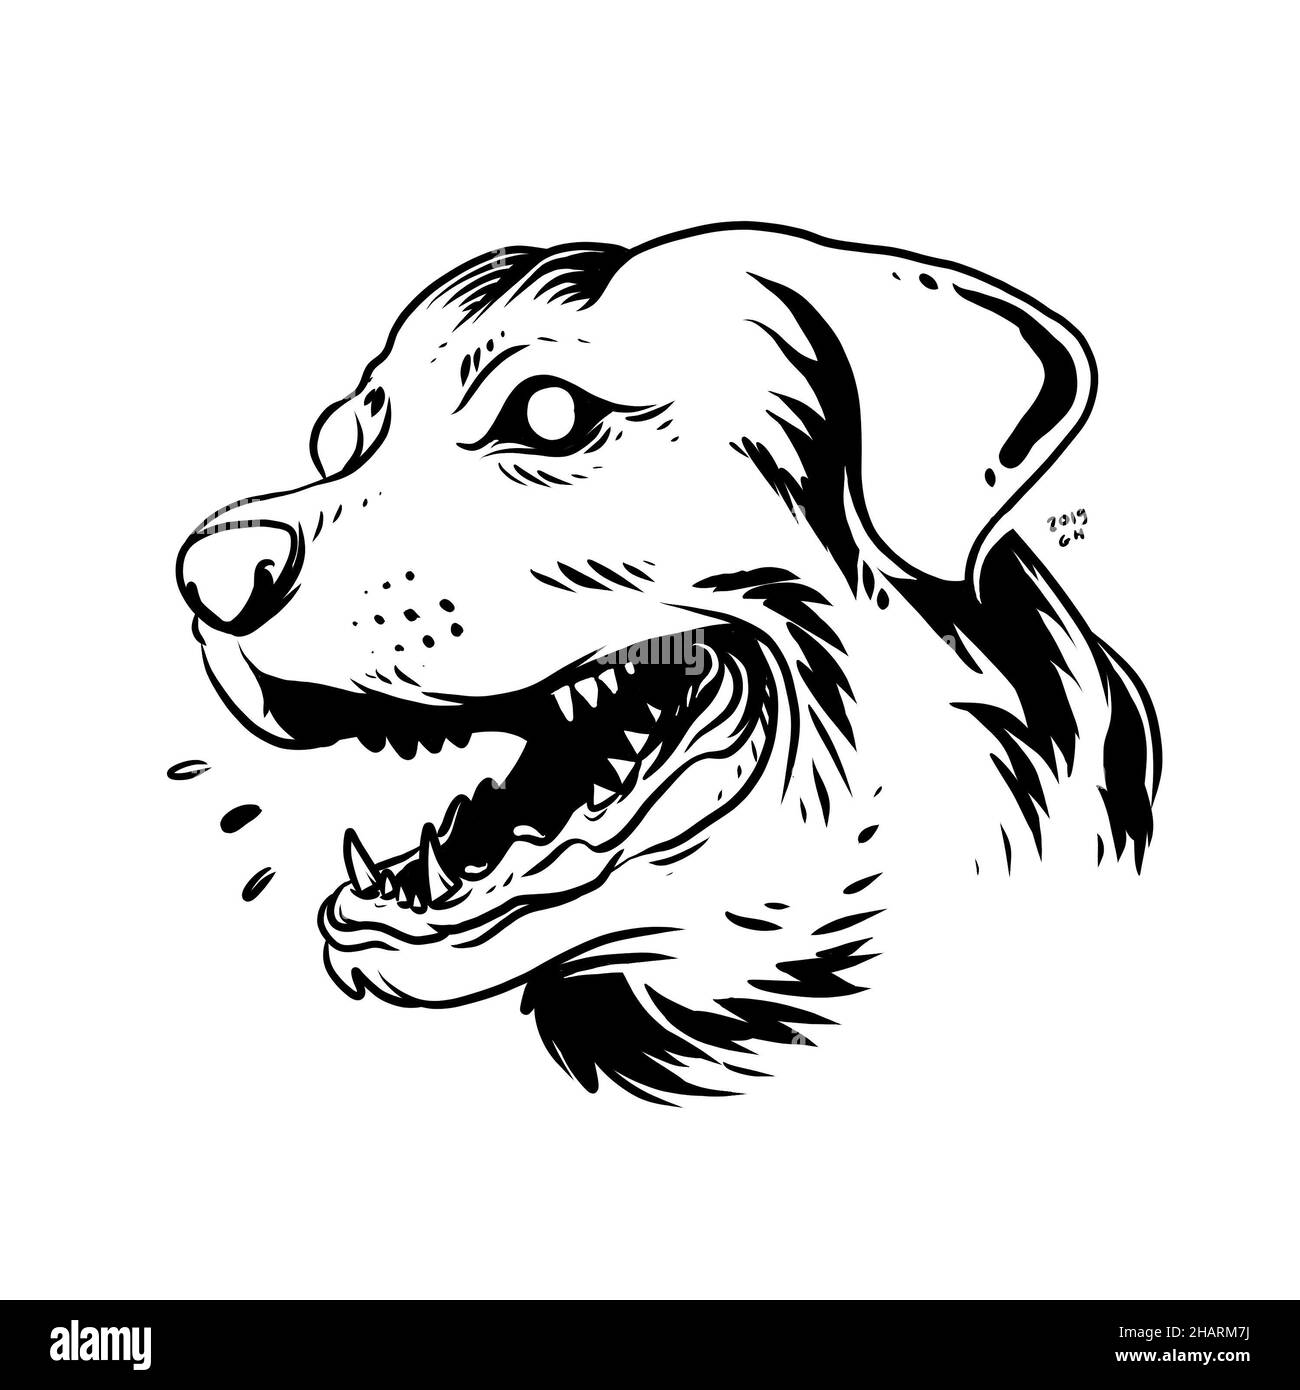 un visage de chien aboyant. une illustration dessinée à la main d'une tête d'animal sauvage. dessin d'art de ligne pour emblème, affiche, autocollant, tatouage, etc Banque D'Images